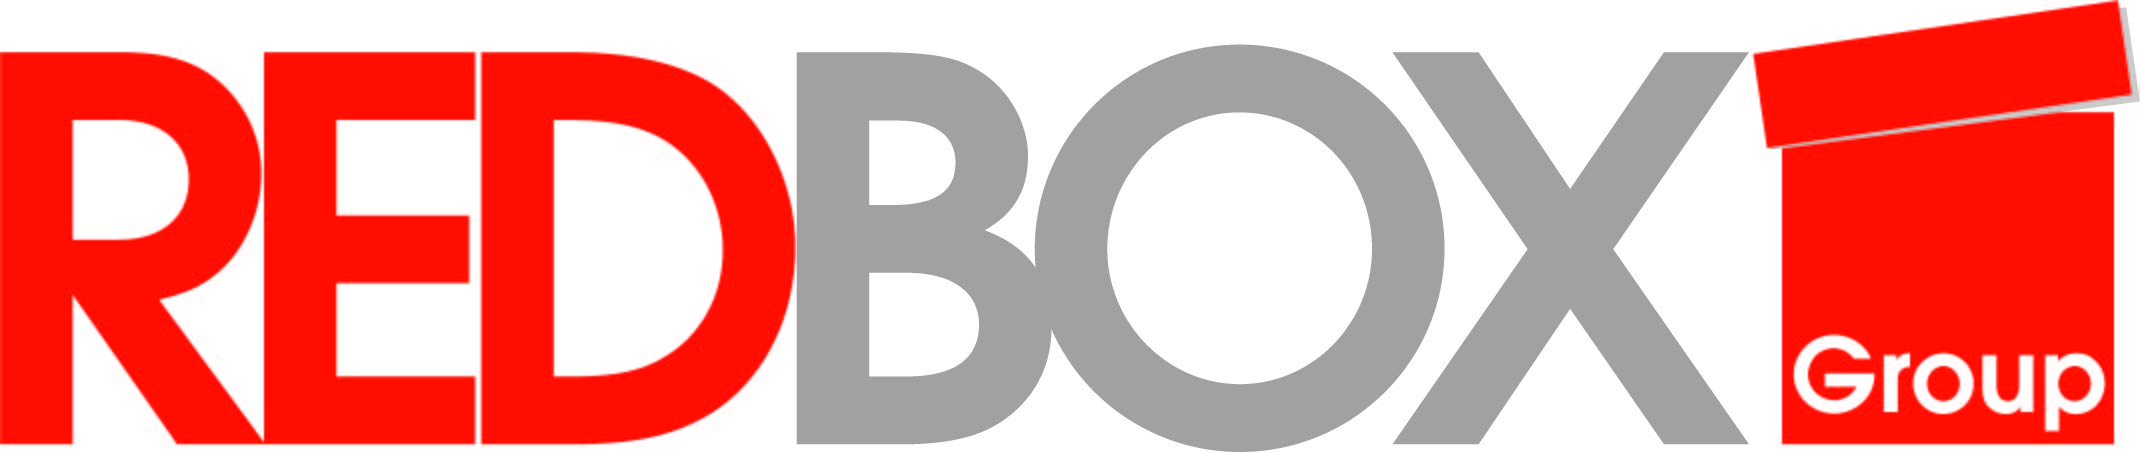 logo for REDBOX